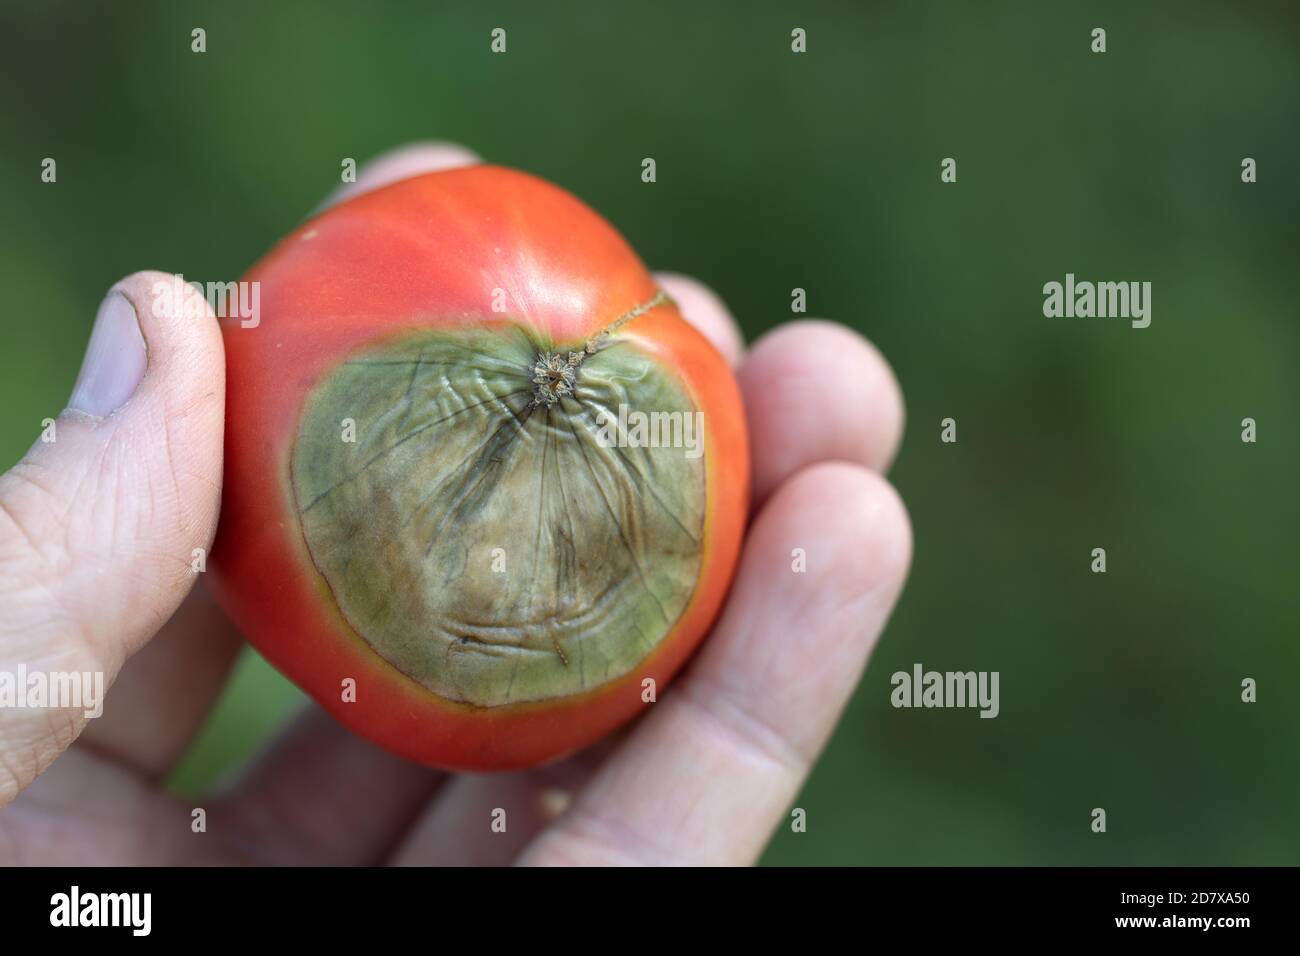 tomate rouge mûre avec dessus gâté de pourriture vert clair en main Photo  Stock - Alamy